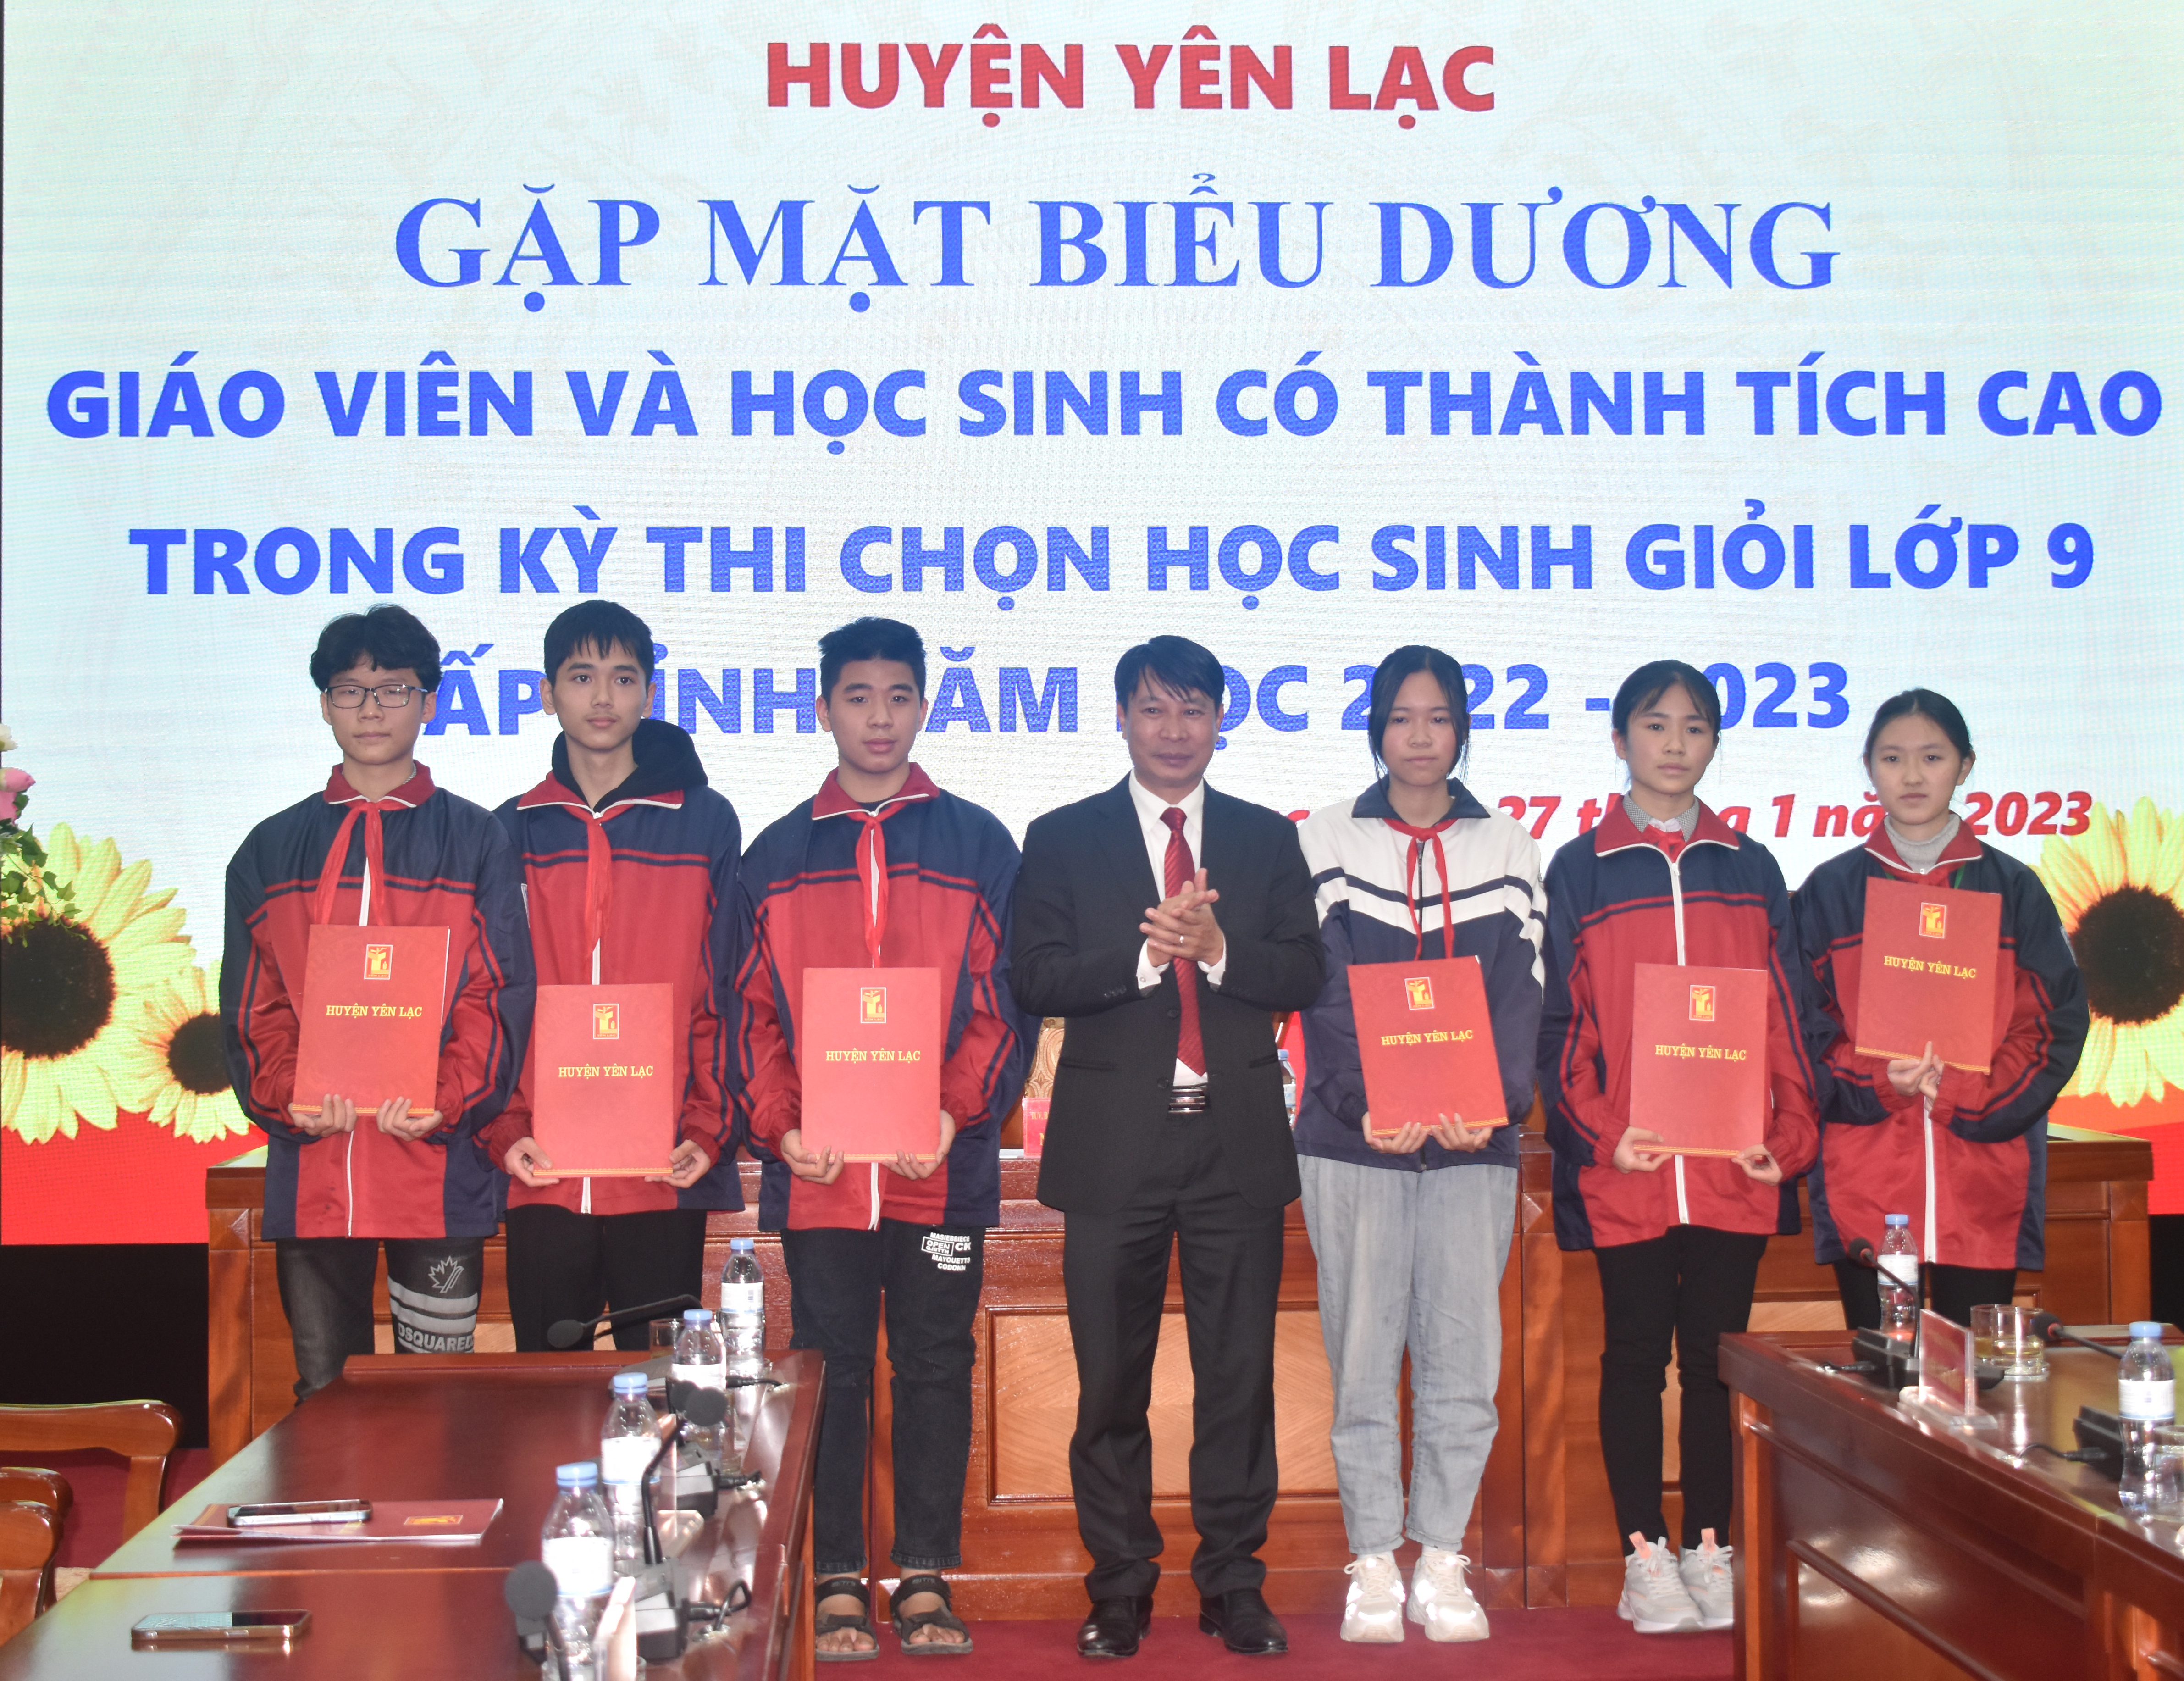 Huyện Yên Lạc biểu dương giáo viên và học sinh có thành tích cao trong kỳ thi HSG lớp 9 cấp tỉnh